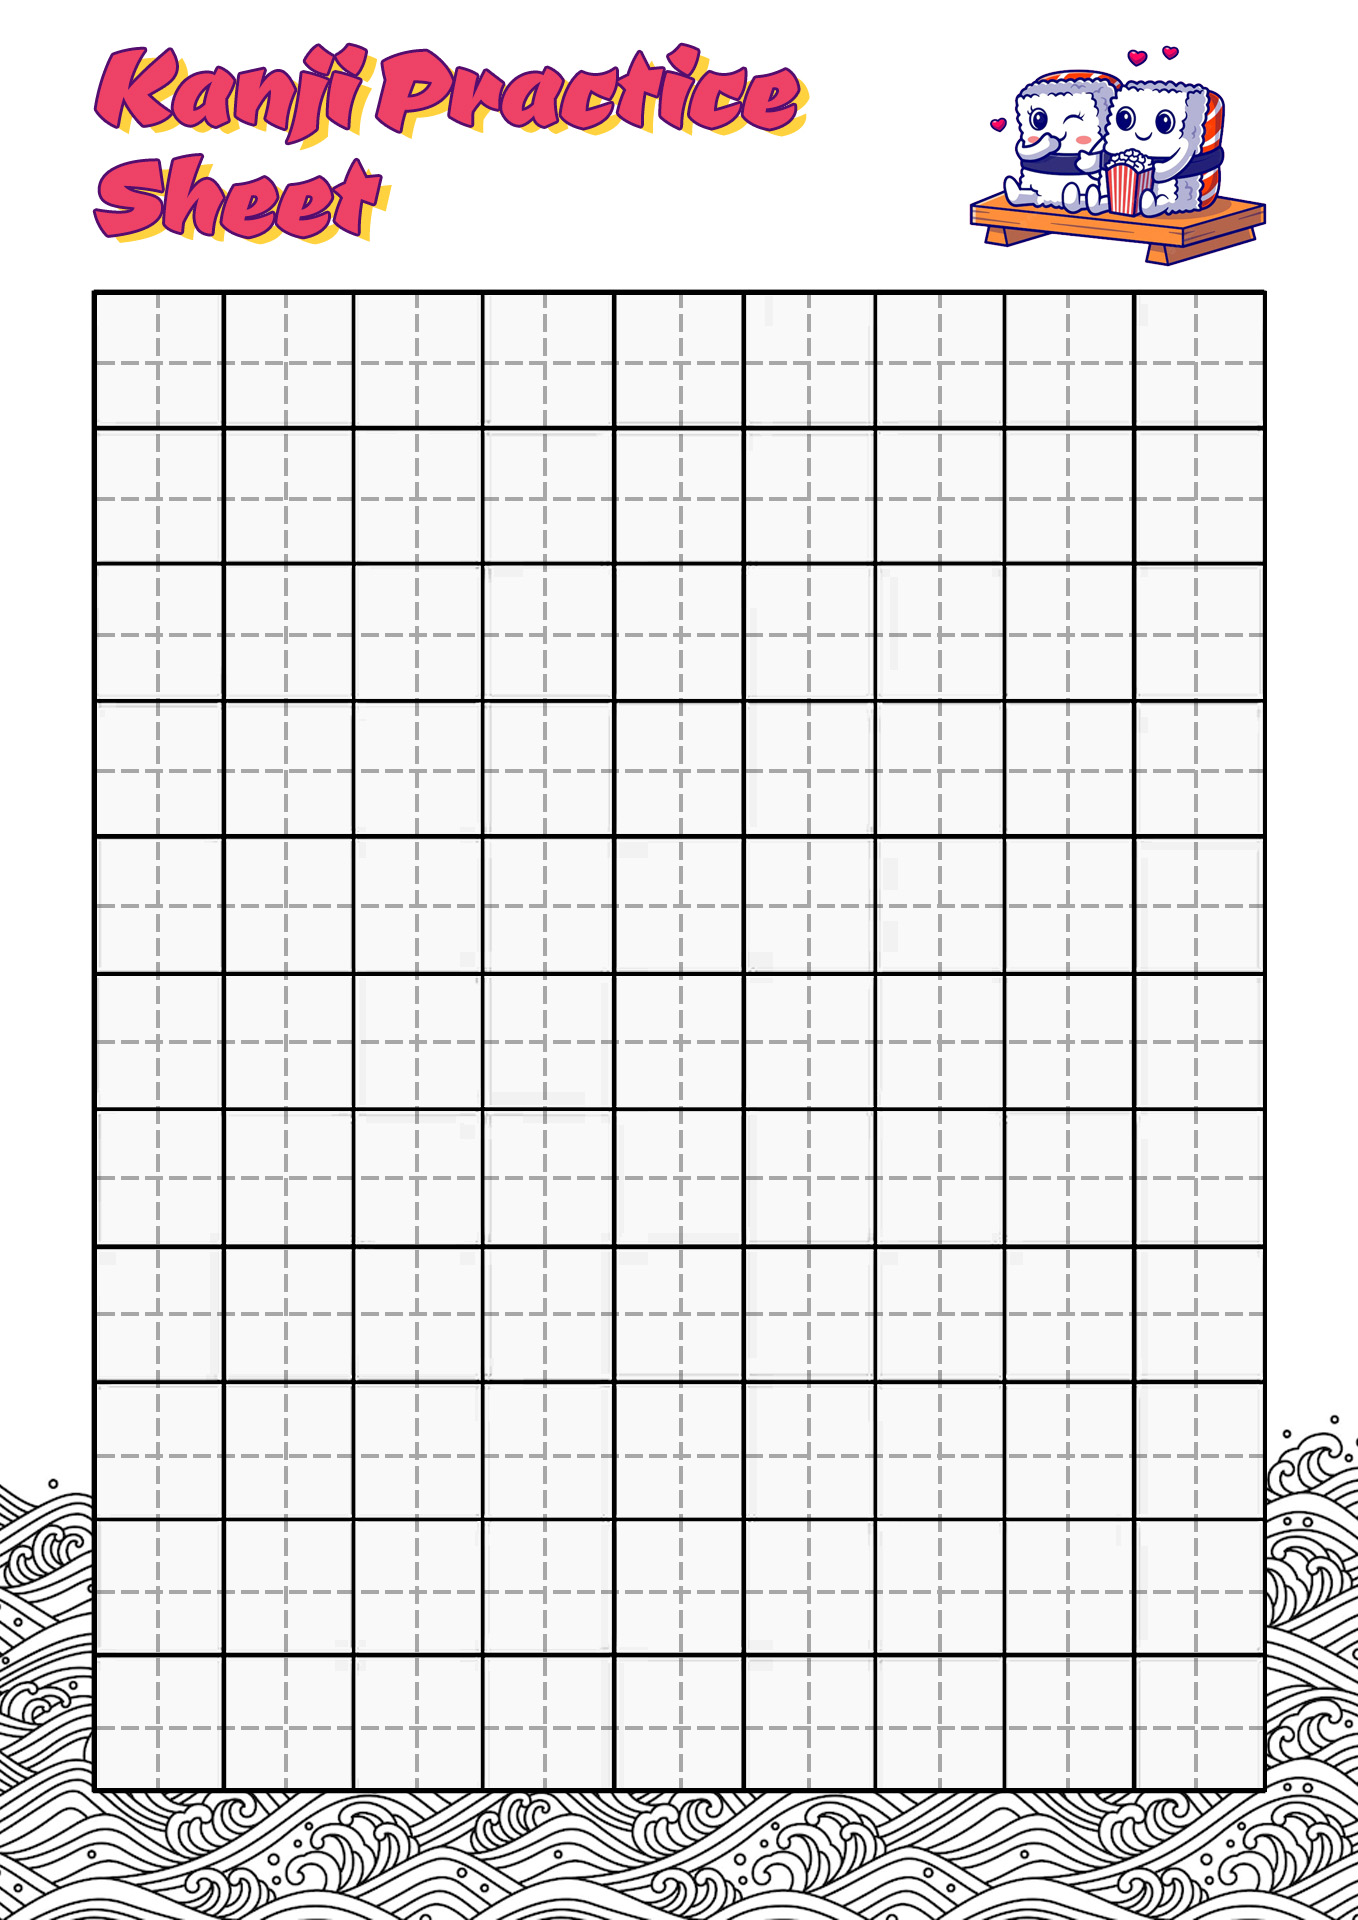 Kanji Practice Sheets Image